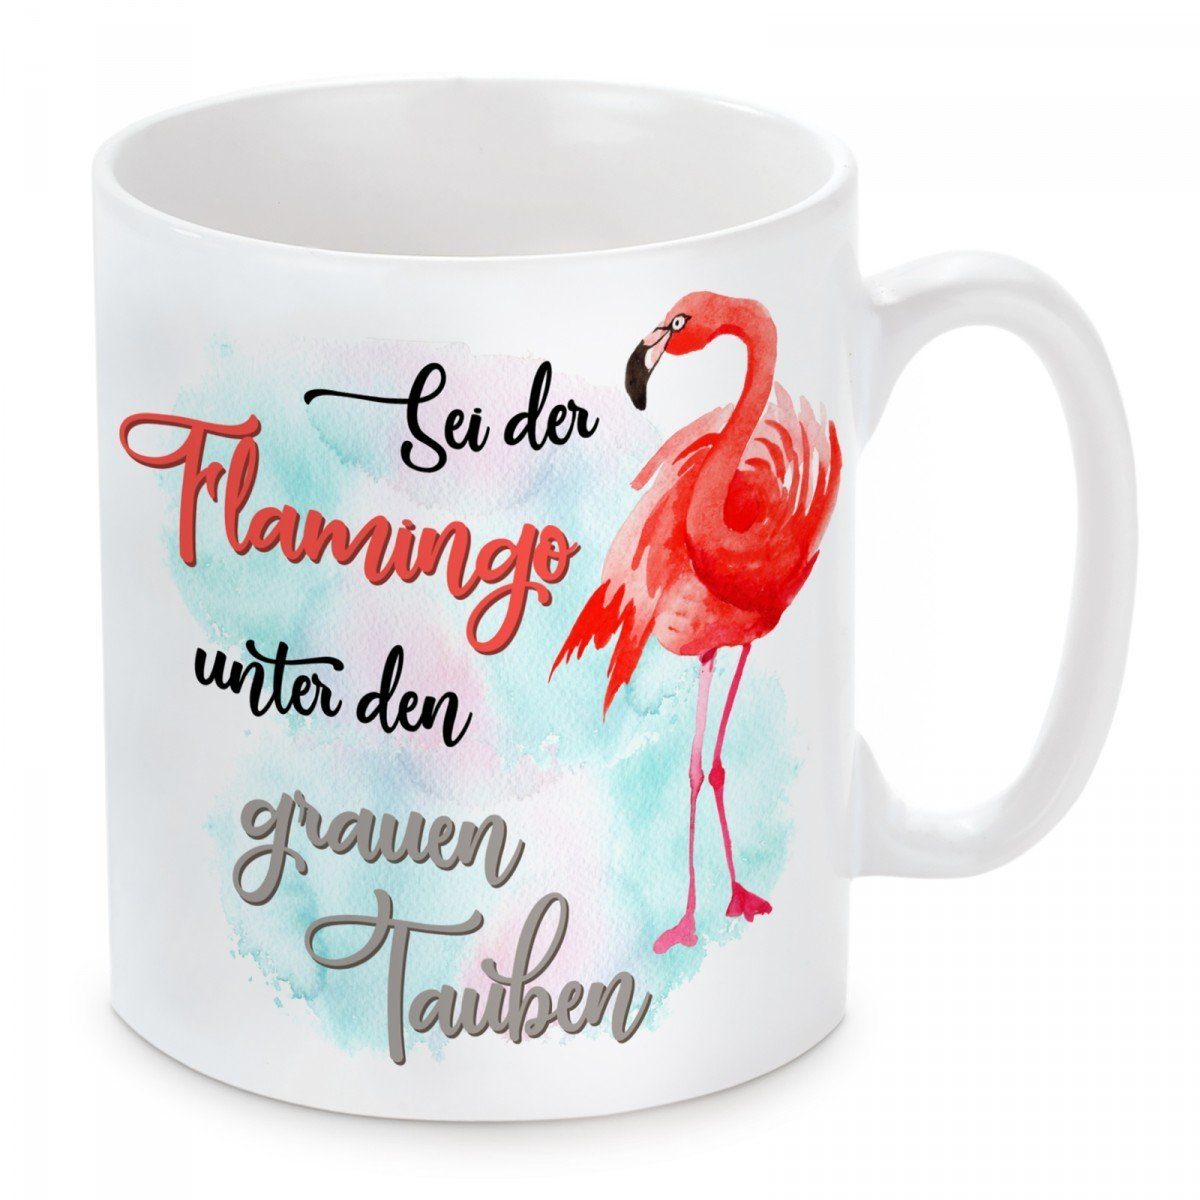 Keramik, Herzbotschaft Tauben, Motiv der und Sei spülmaschinenfest grauen Kaffeetasse mit unter den Kaffeebecher Tasse mikrowellengeeignet Flamingo